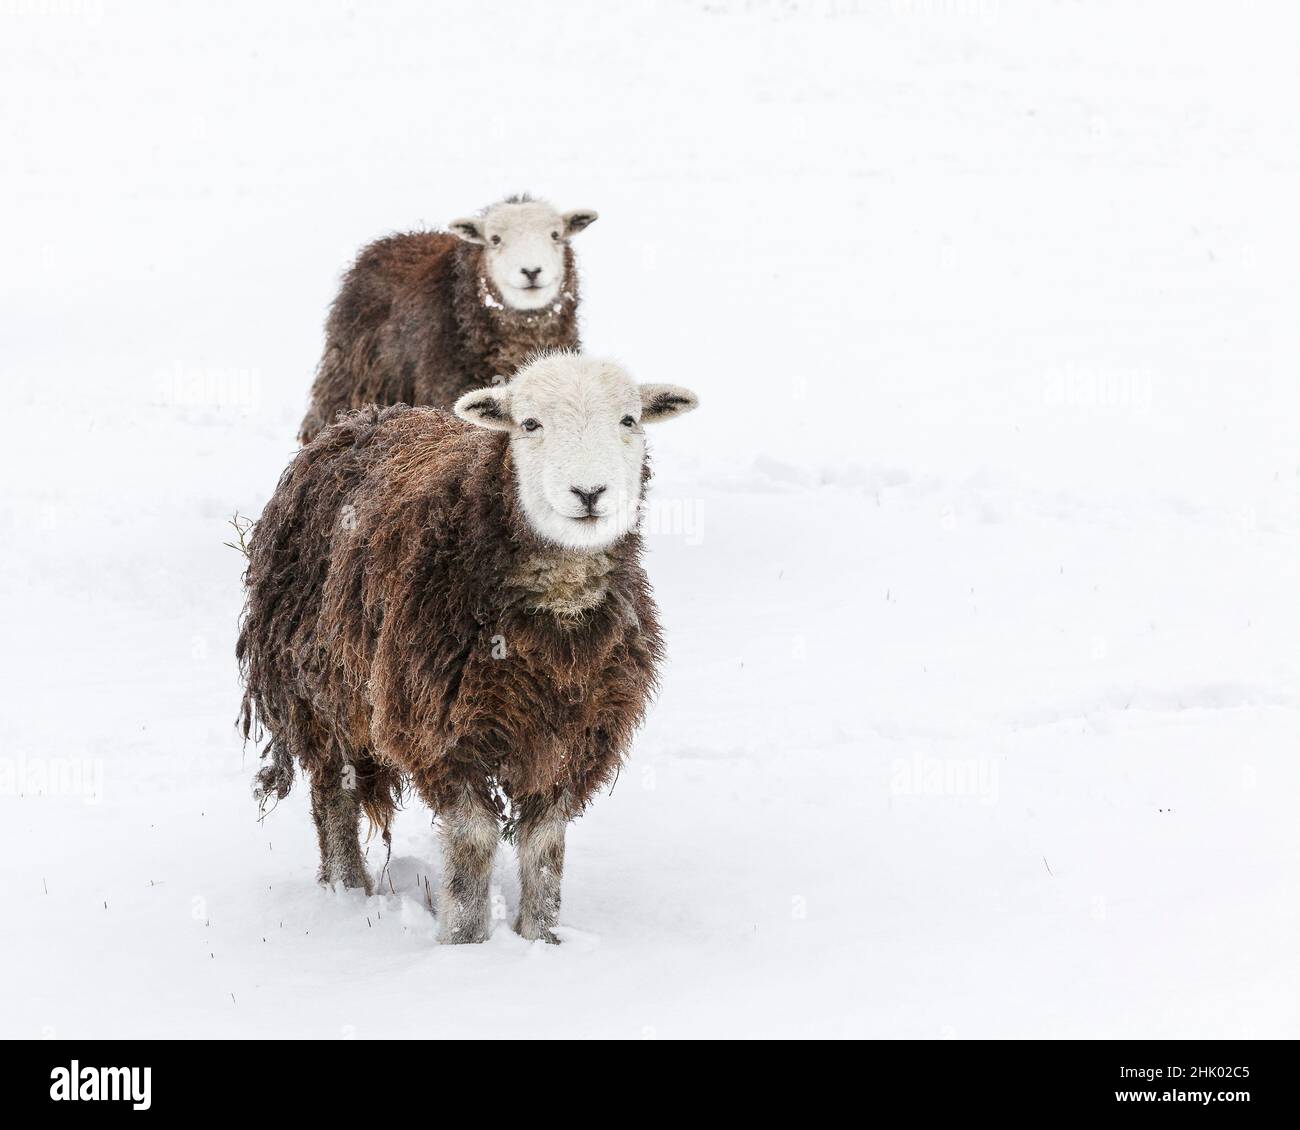 Ovejas Herdwick (cordero de oveja) en la nieve Foto de stock